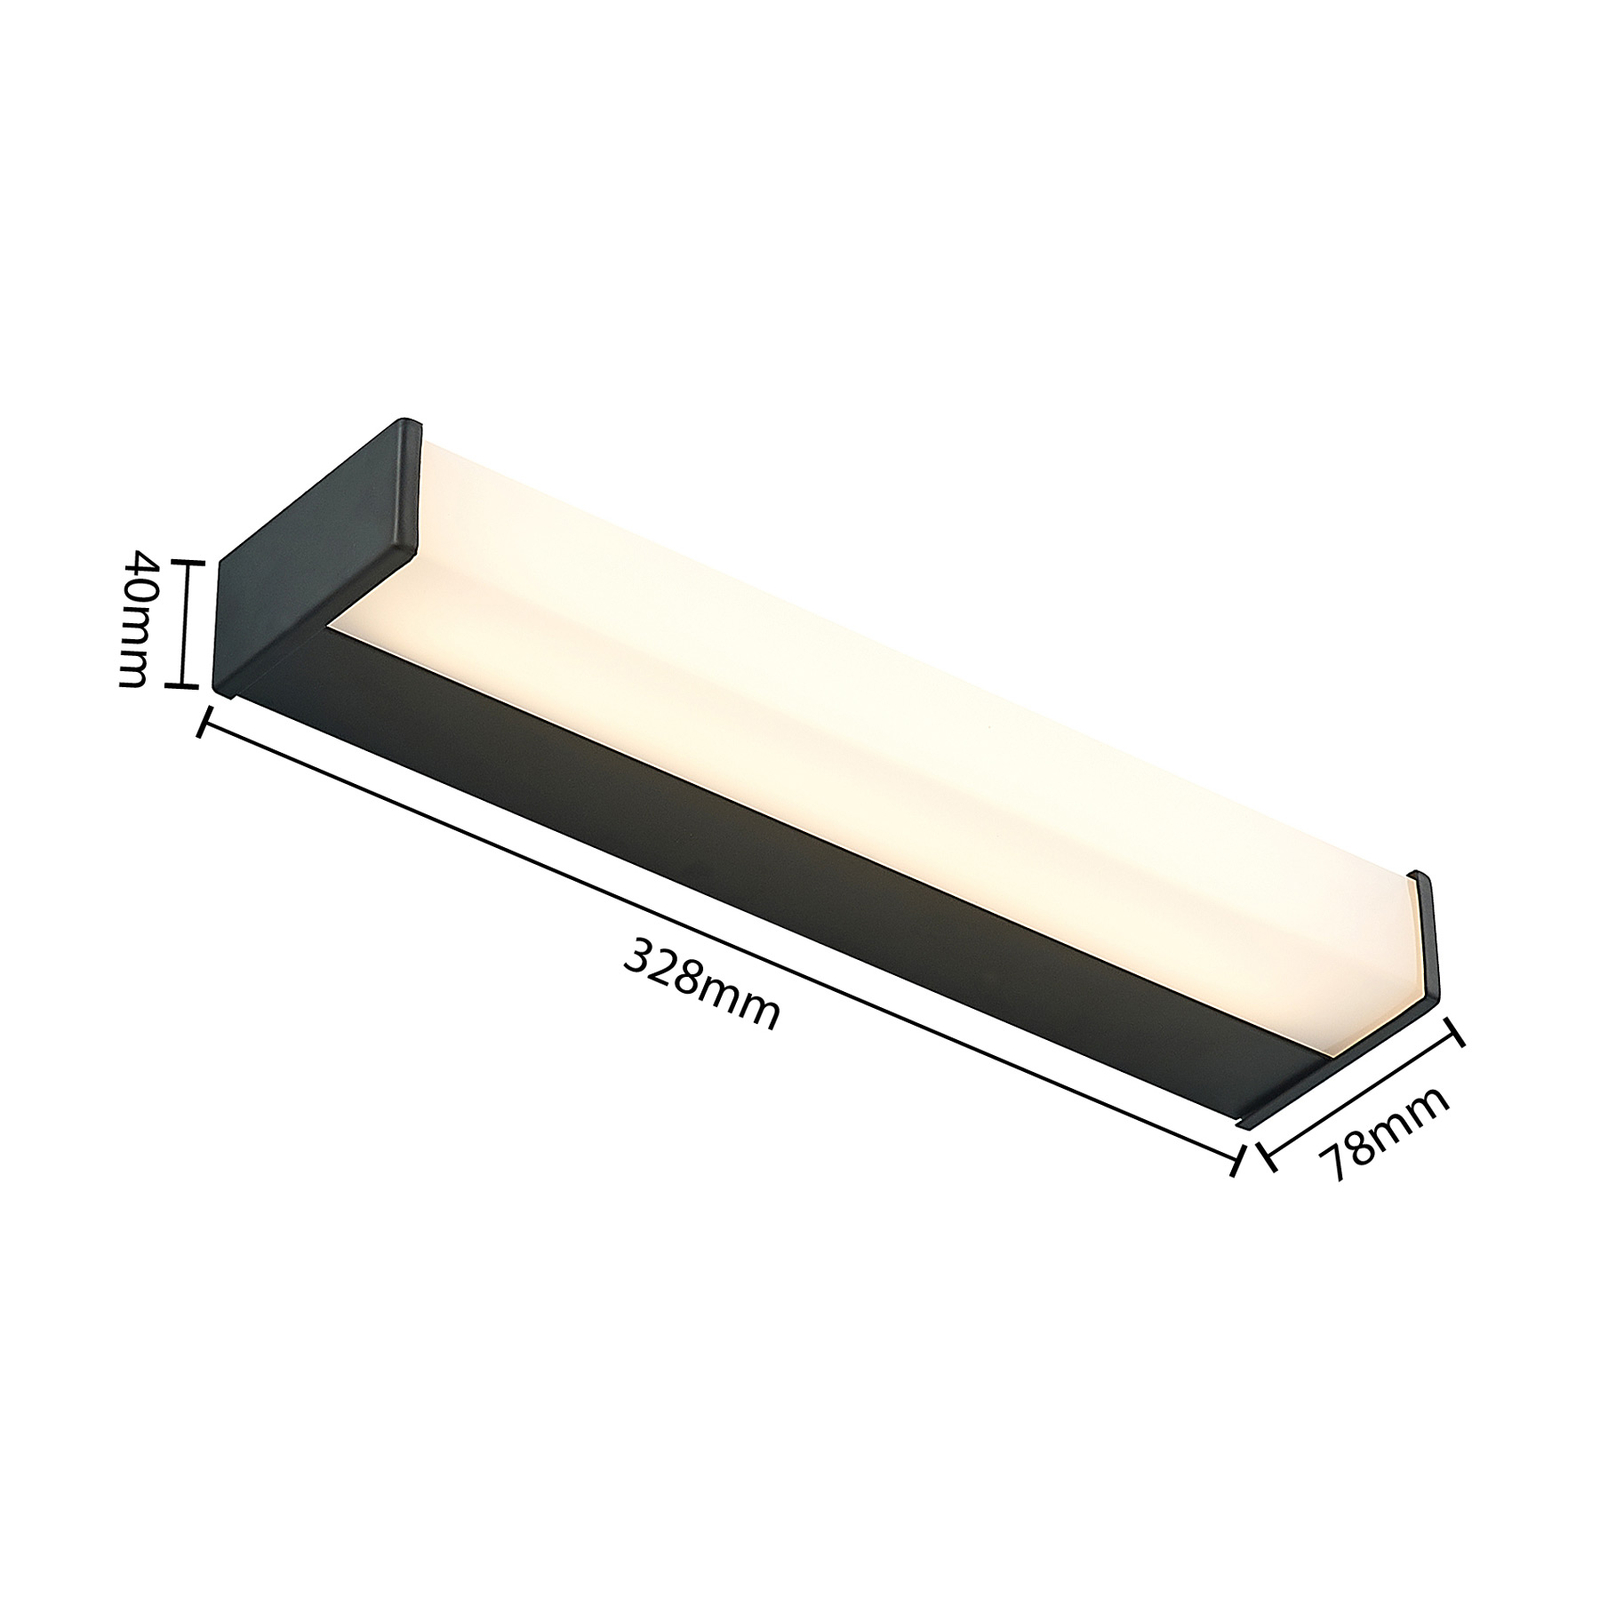 Lindby Ulisan LED koupelnové světlo hranaté 32,8cm